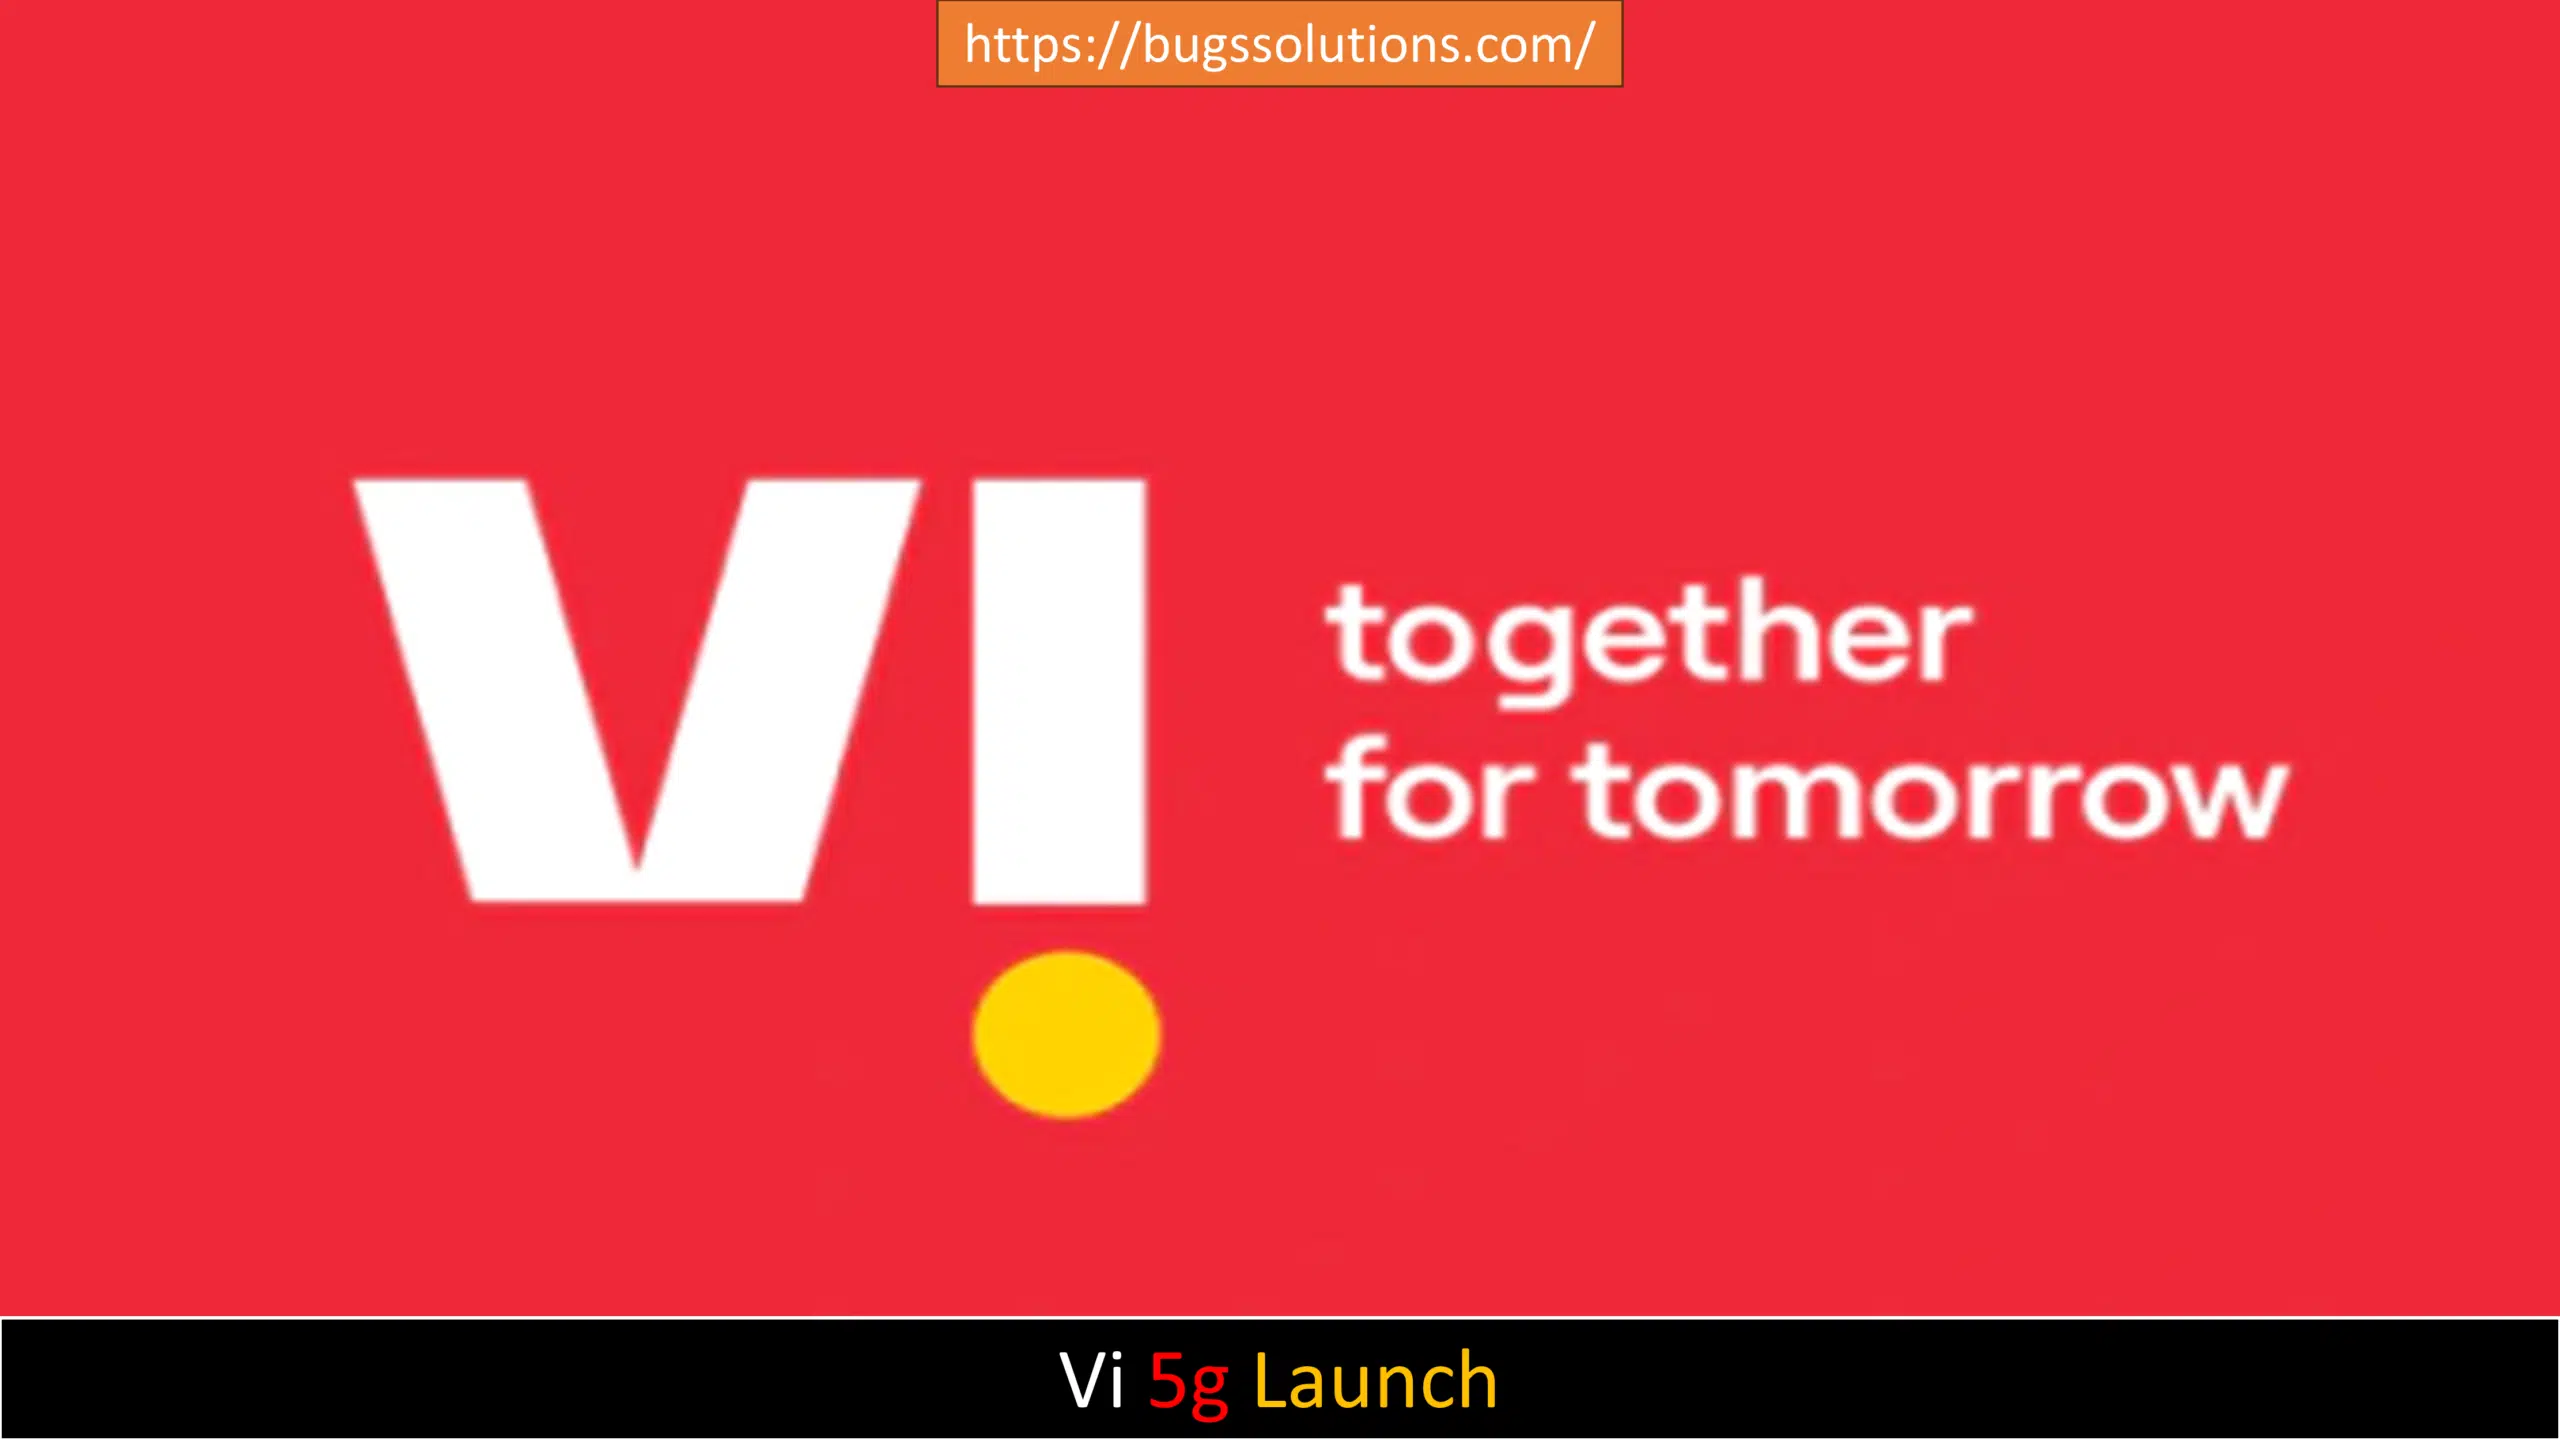 Vi 5g Launch